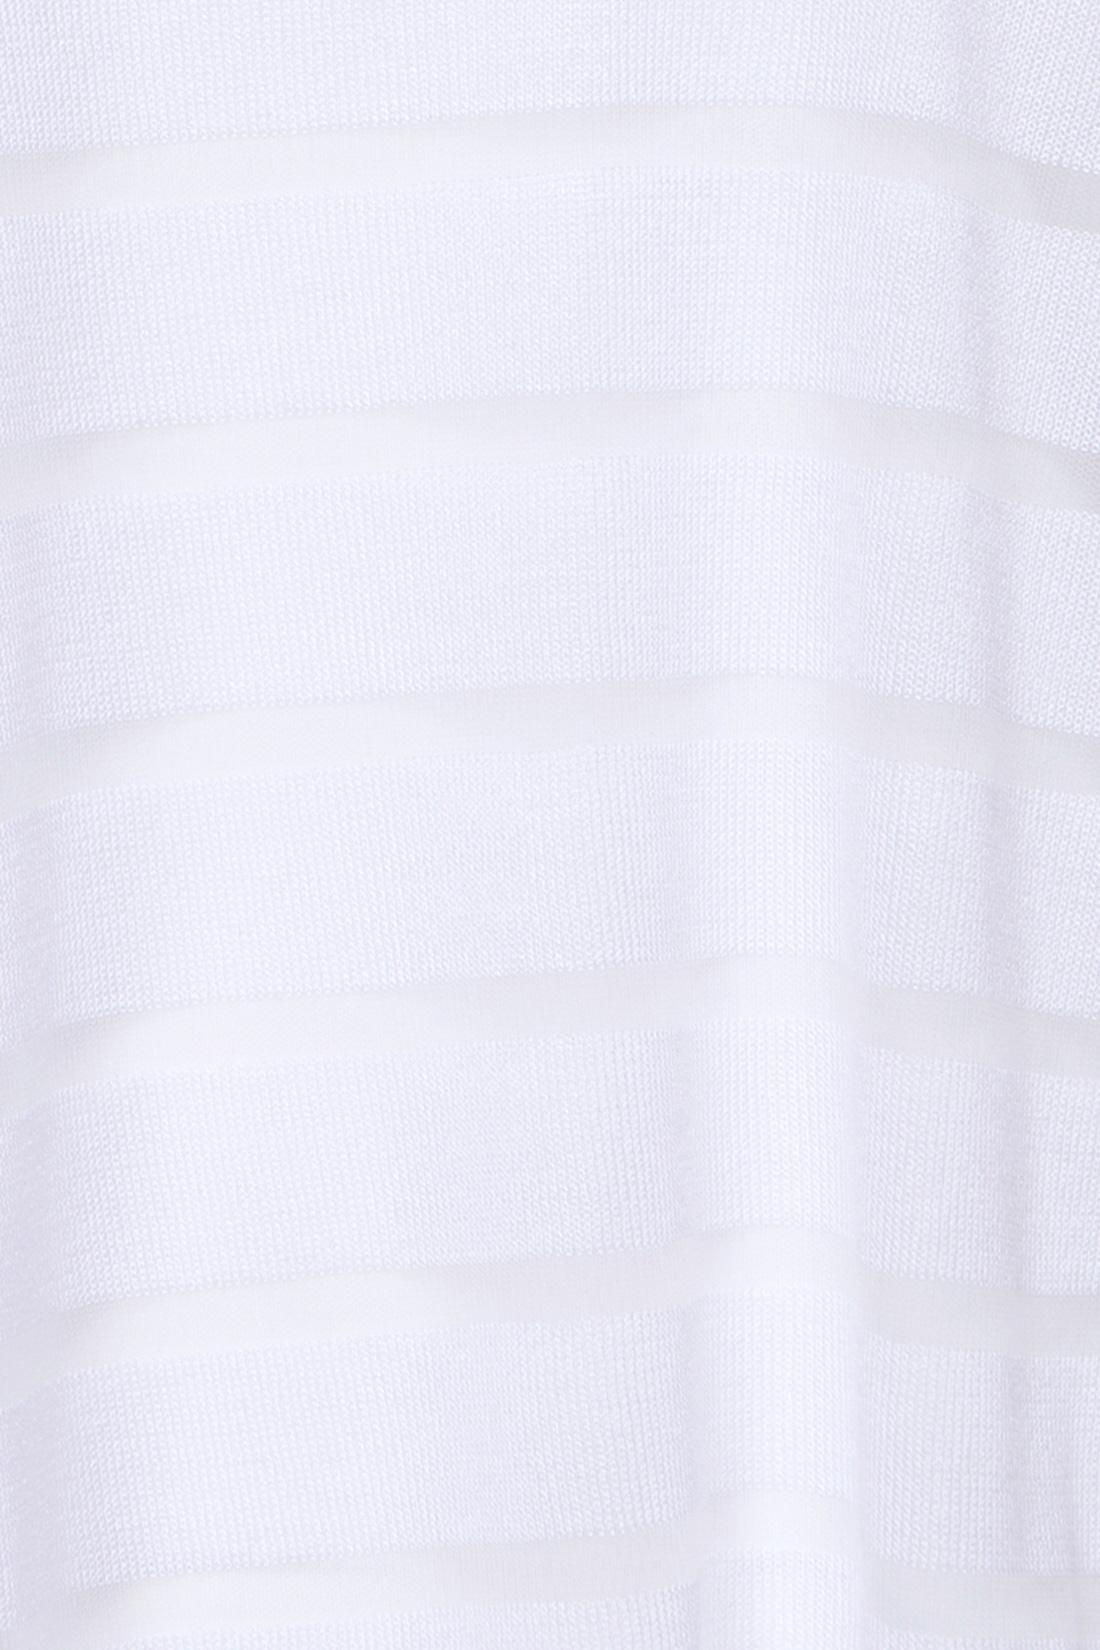 Джемпер-туника в полоску (арт. baon B137013), размер XXL, цвет белый Джемпер-туника в полоску (арт. baon B137013) - фото 3